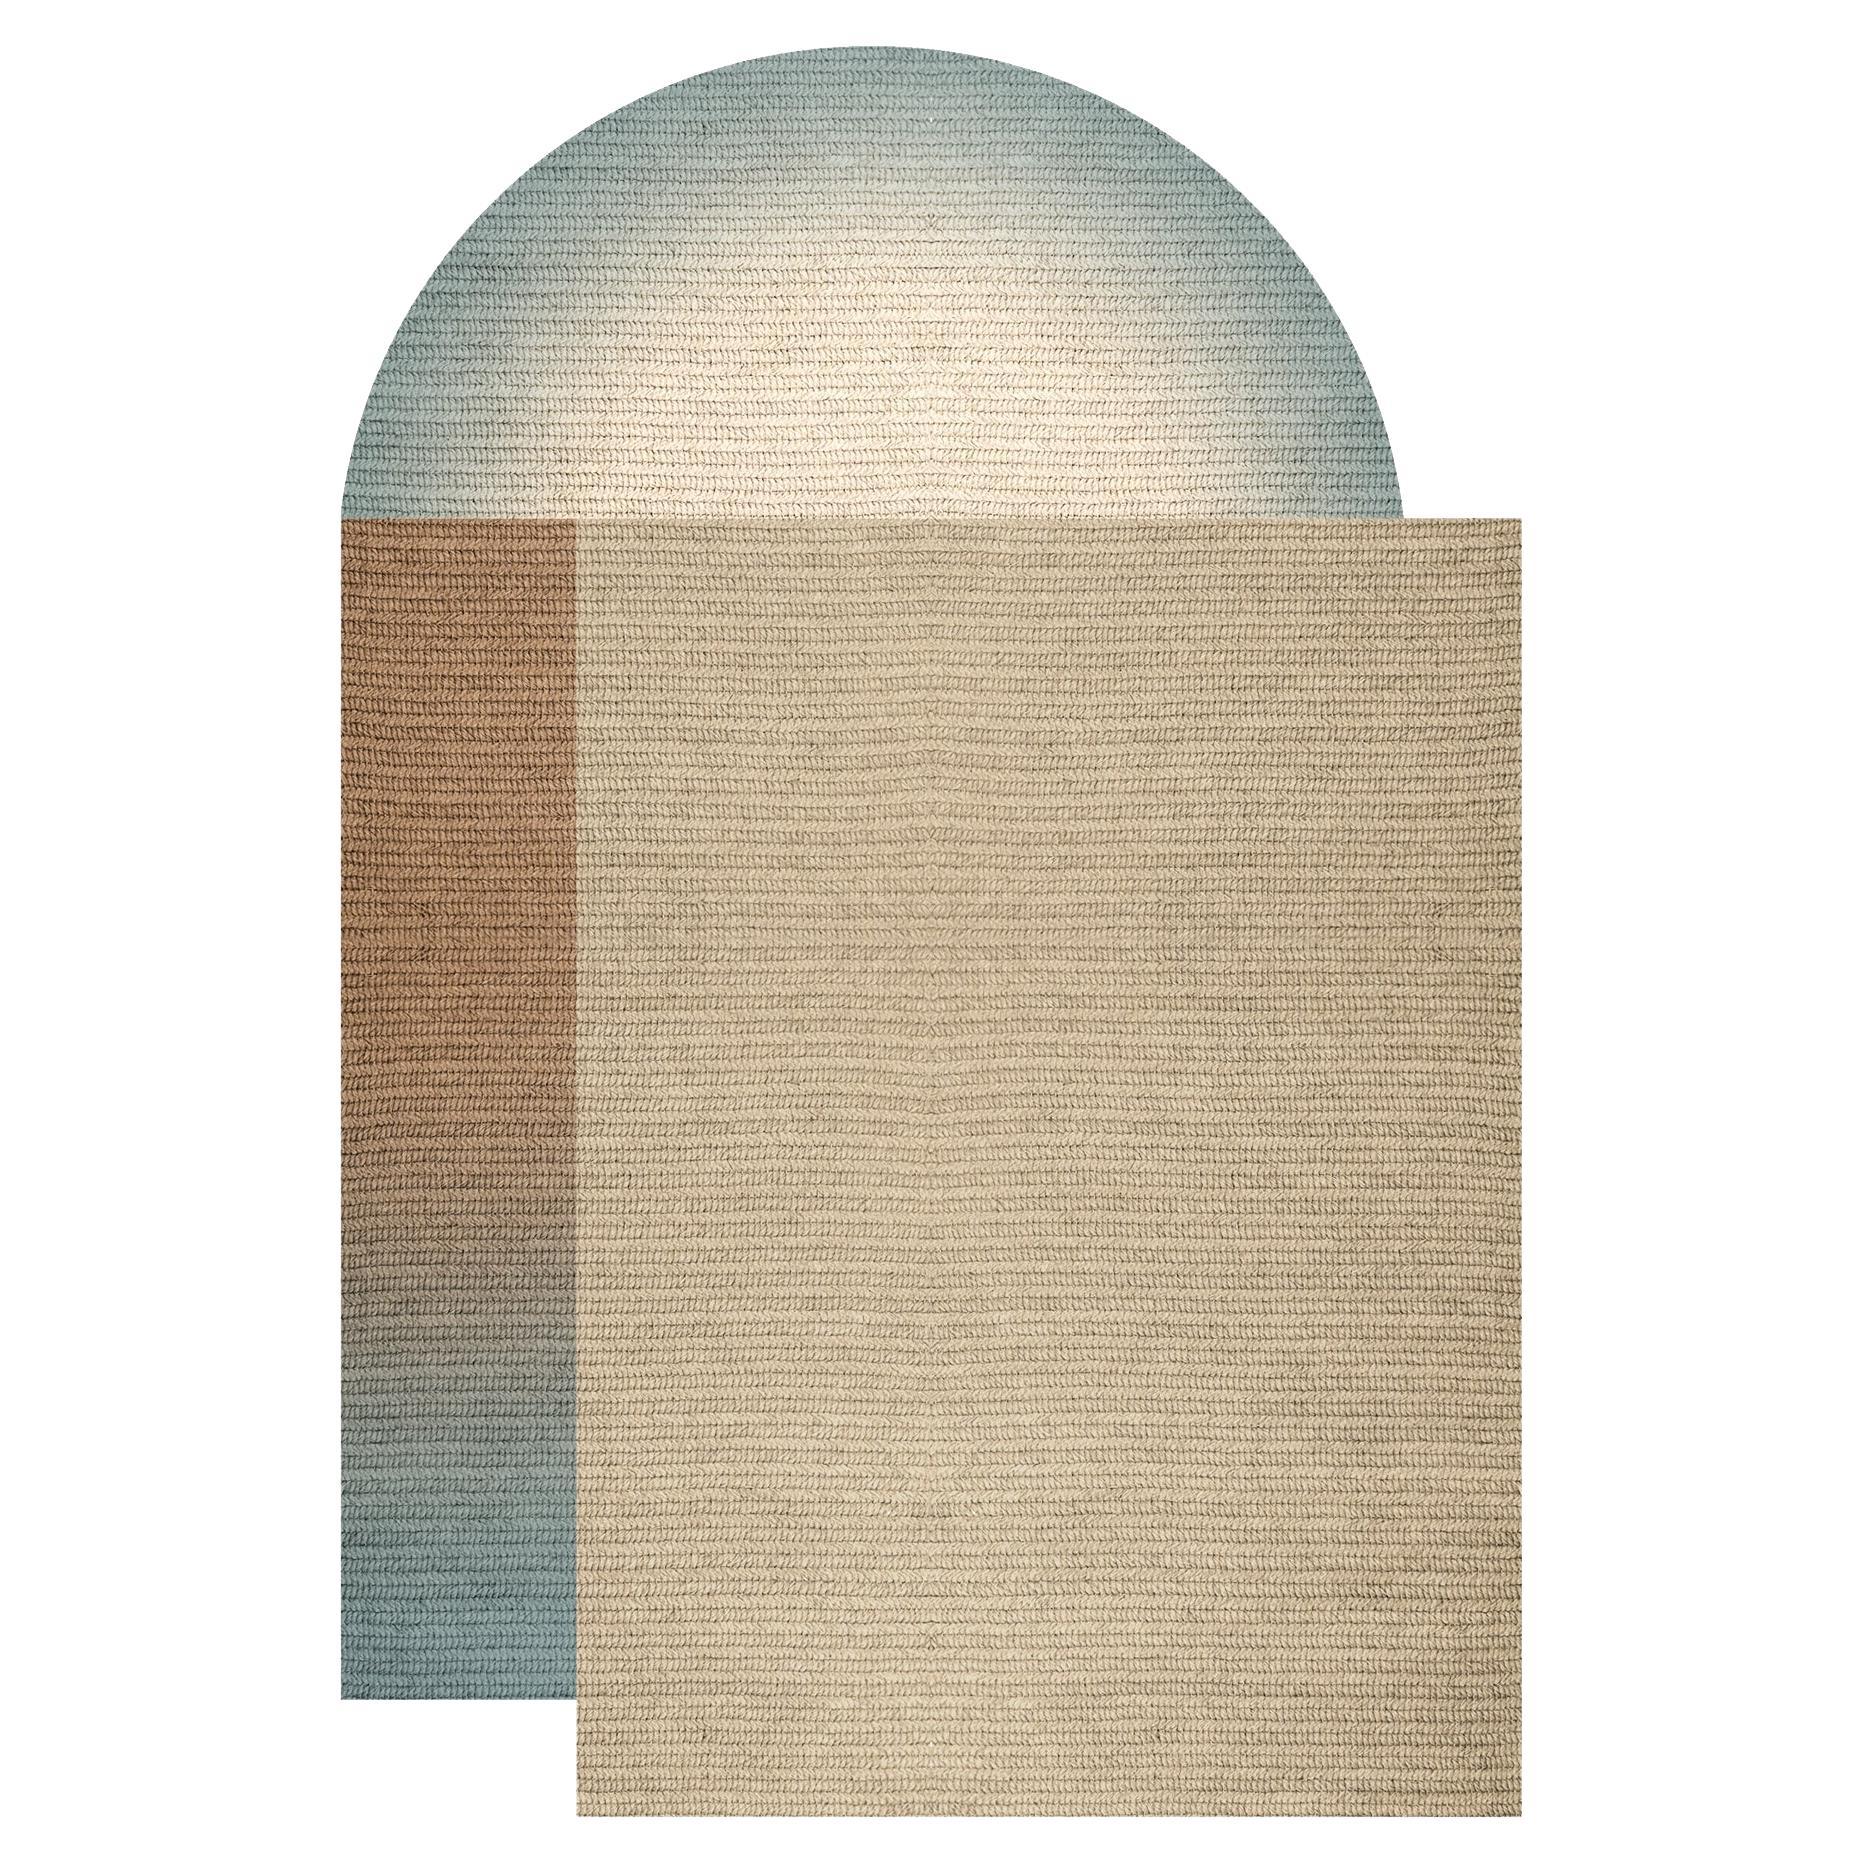 „Fade“-Teppich aus Abaca, Farbe „Sterling“, 160x240cm, von Claire Vos für Musett Design